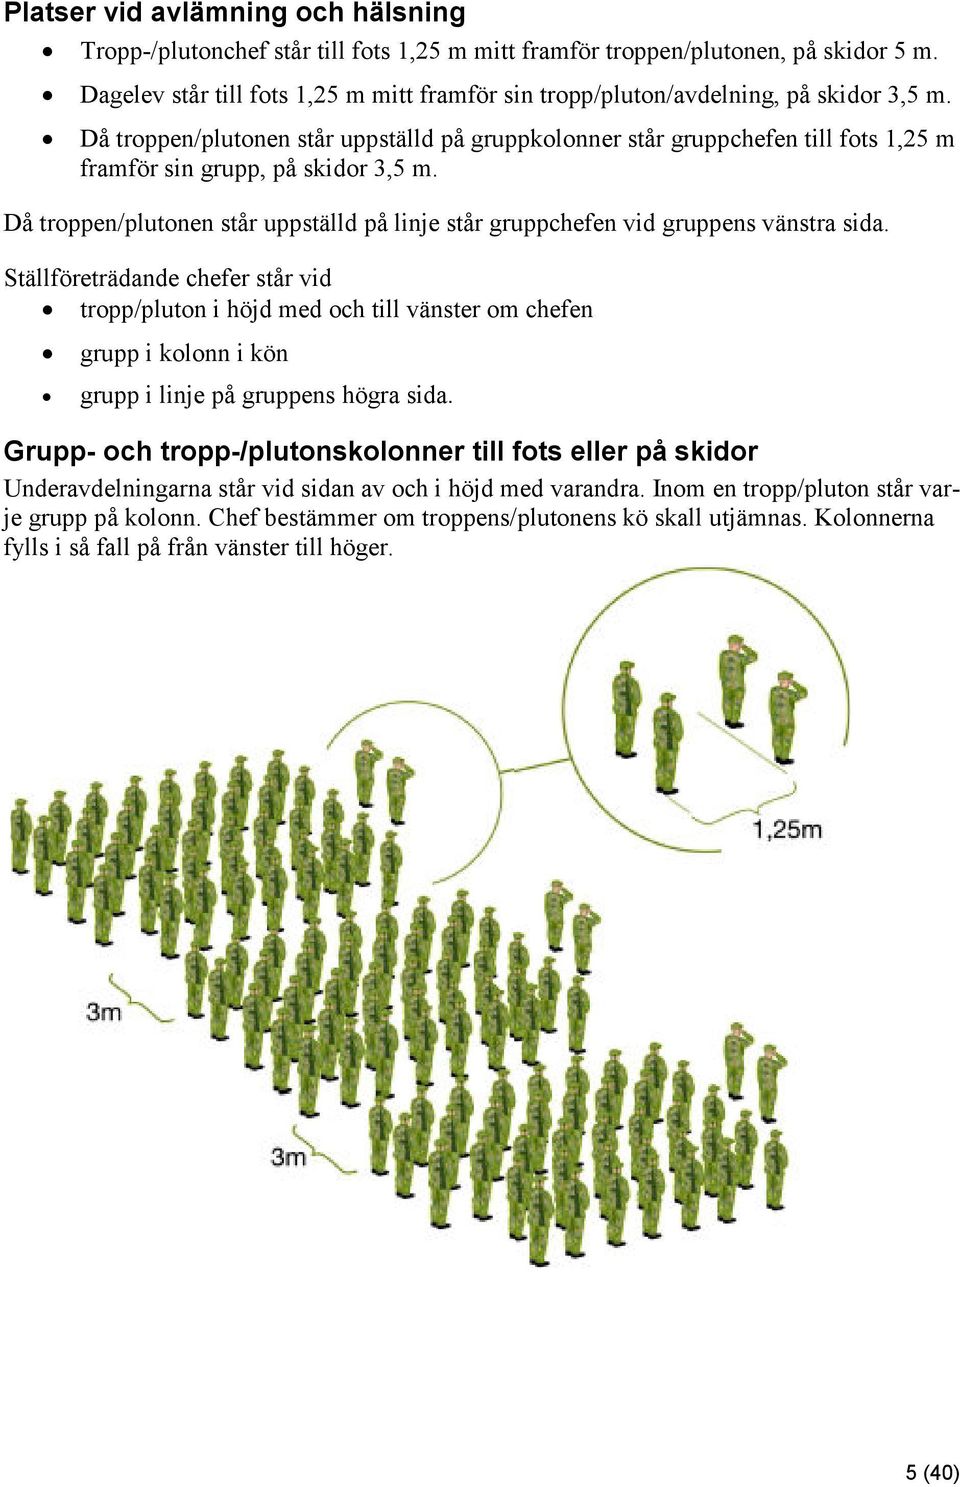 Då troppen/plutonen står uppställd på gruppkolonner står gruppchefen till fots 1,25 m framför sin grupp, på skidor 3,5 m.